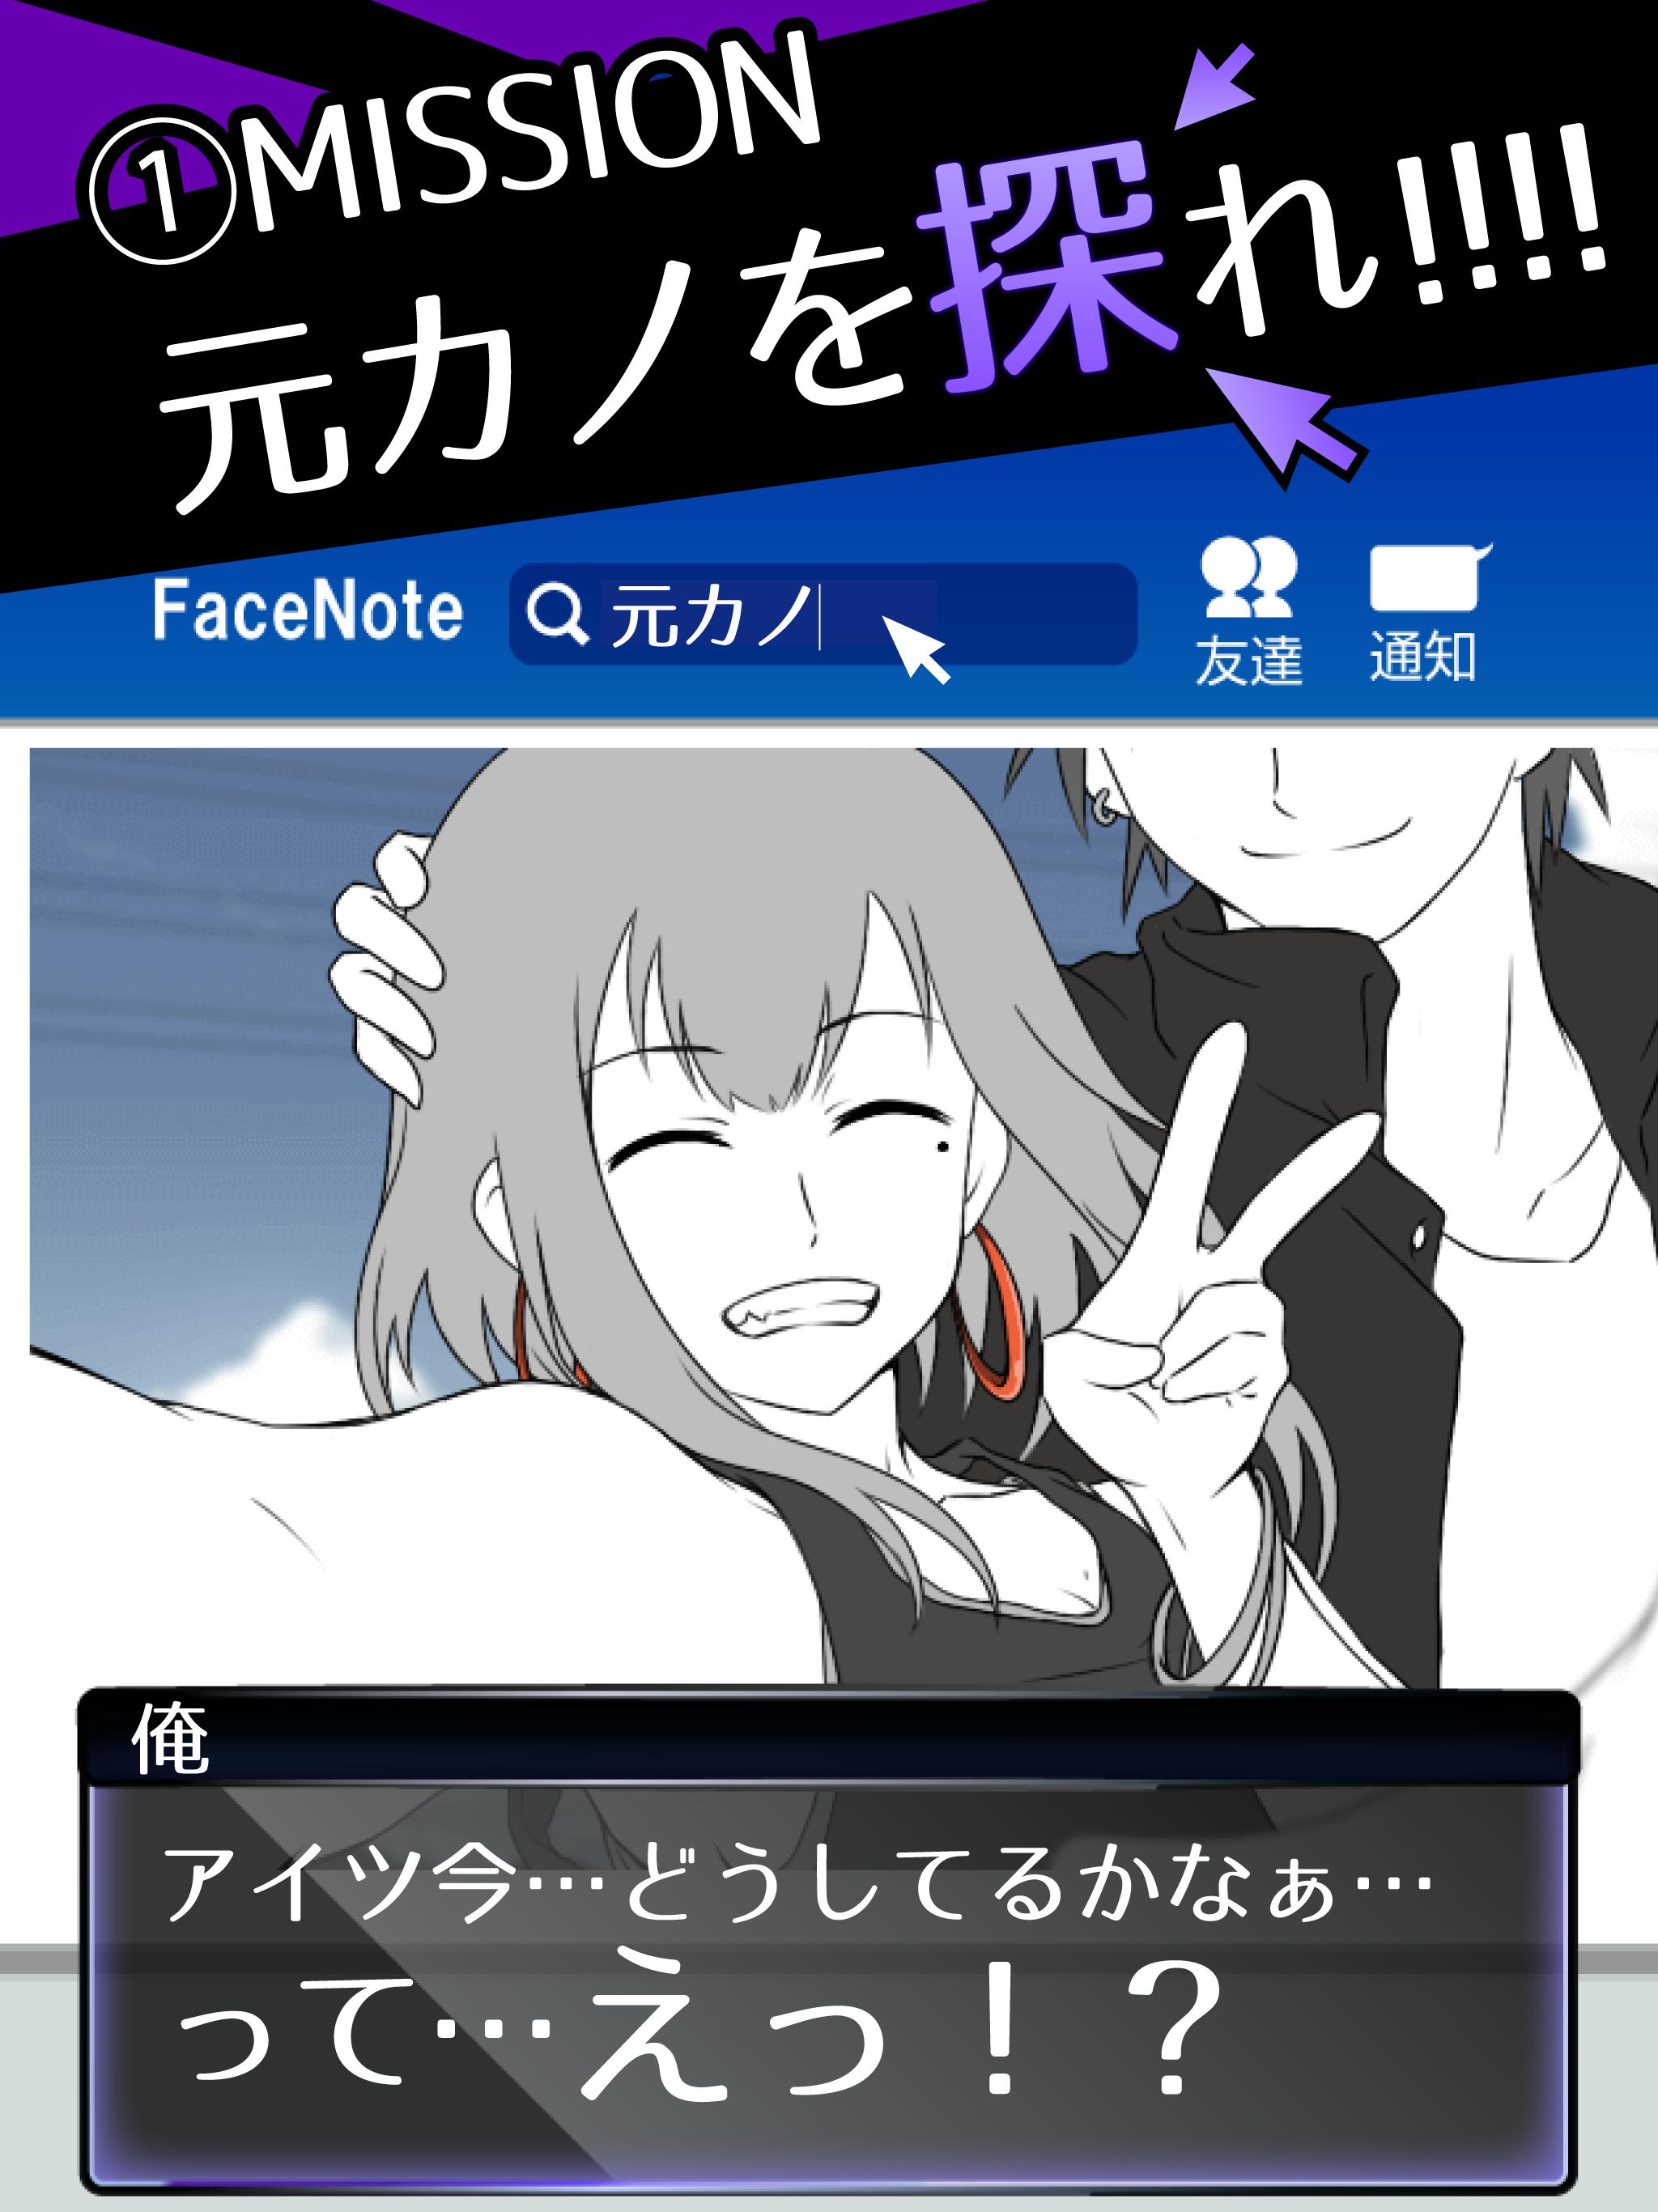 元カノは友達だから問題ない 1.6.0 Screenshot 7